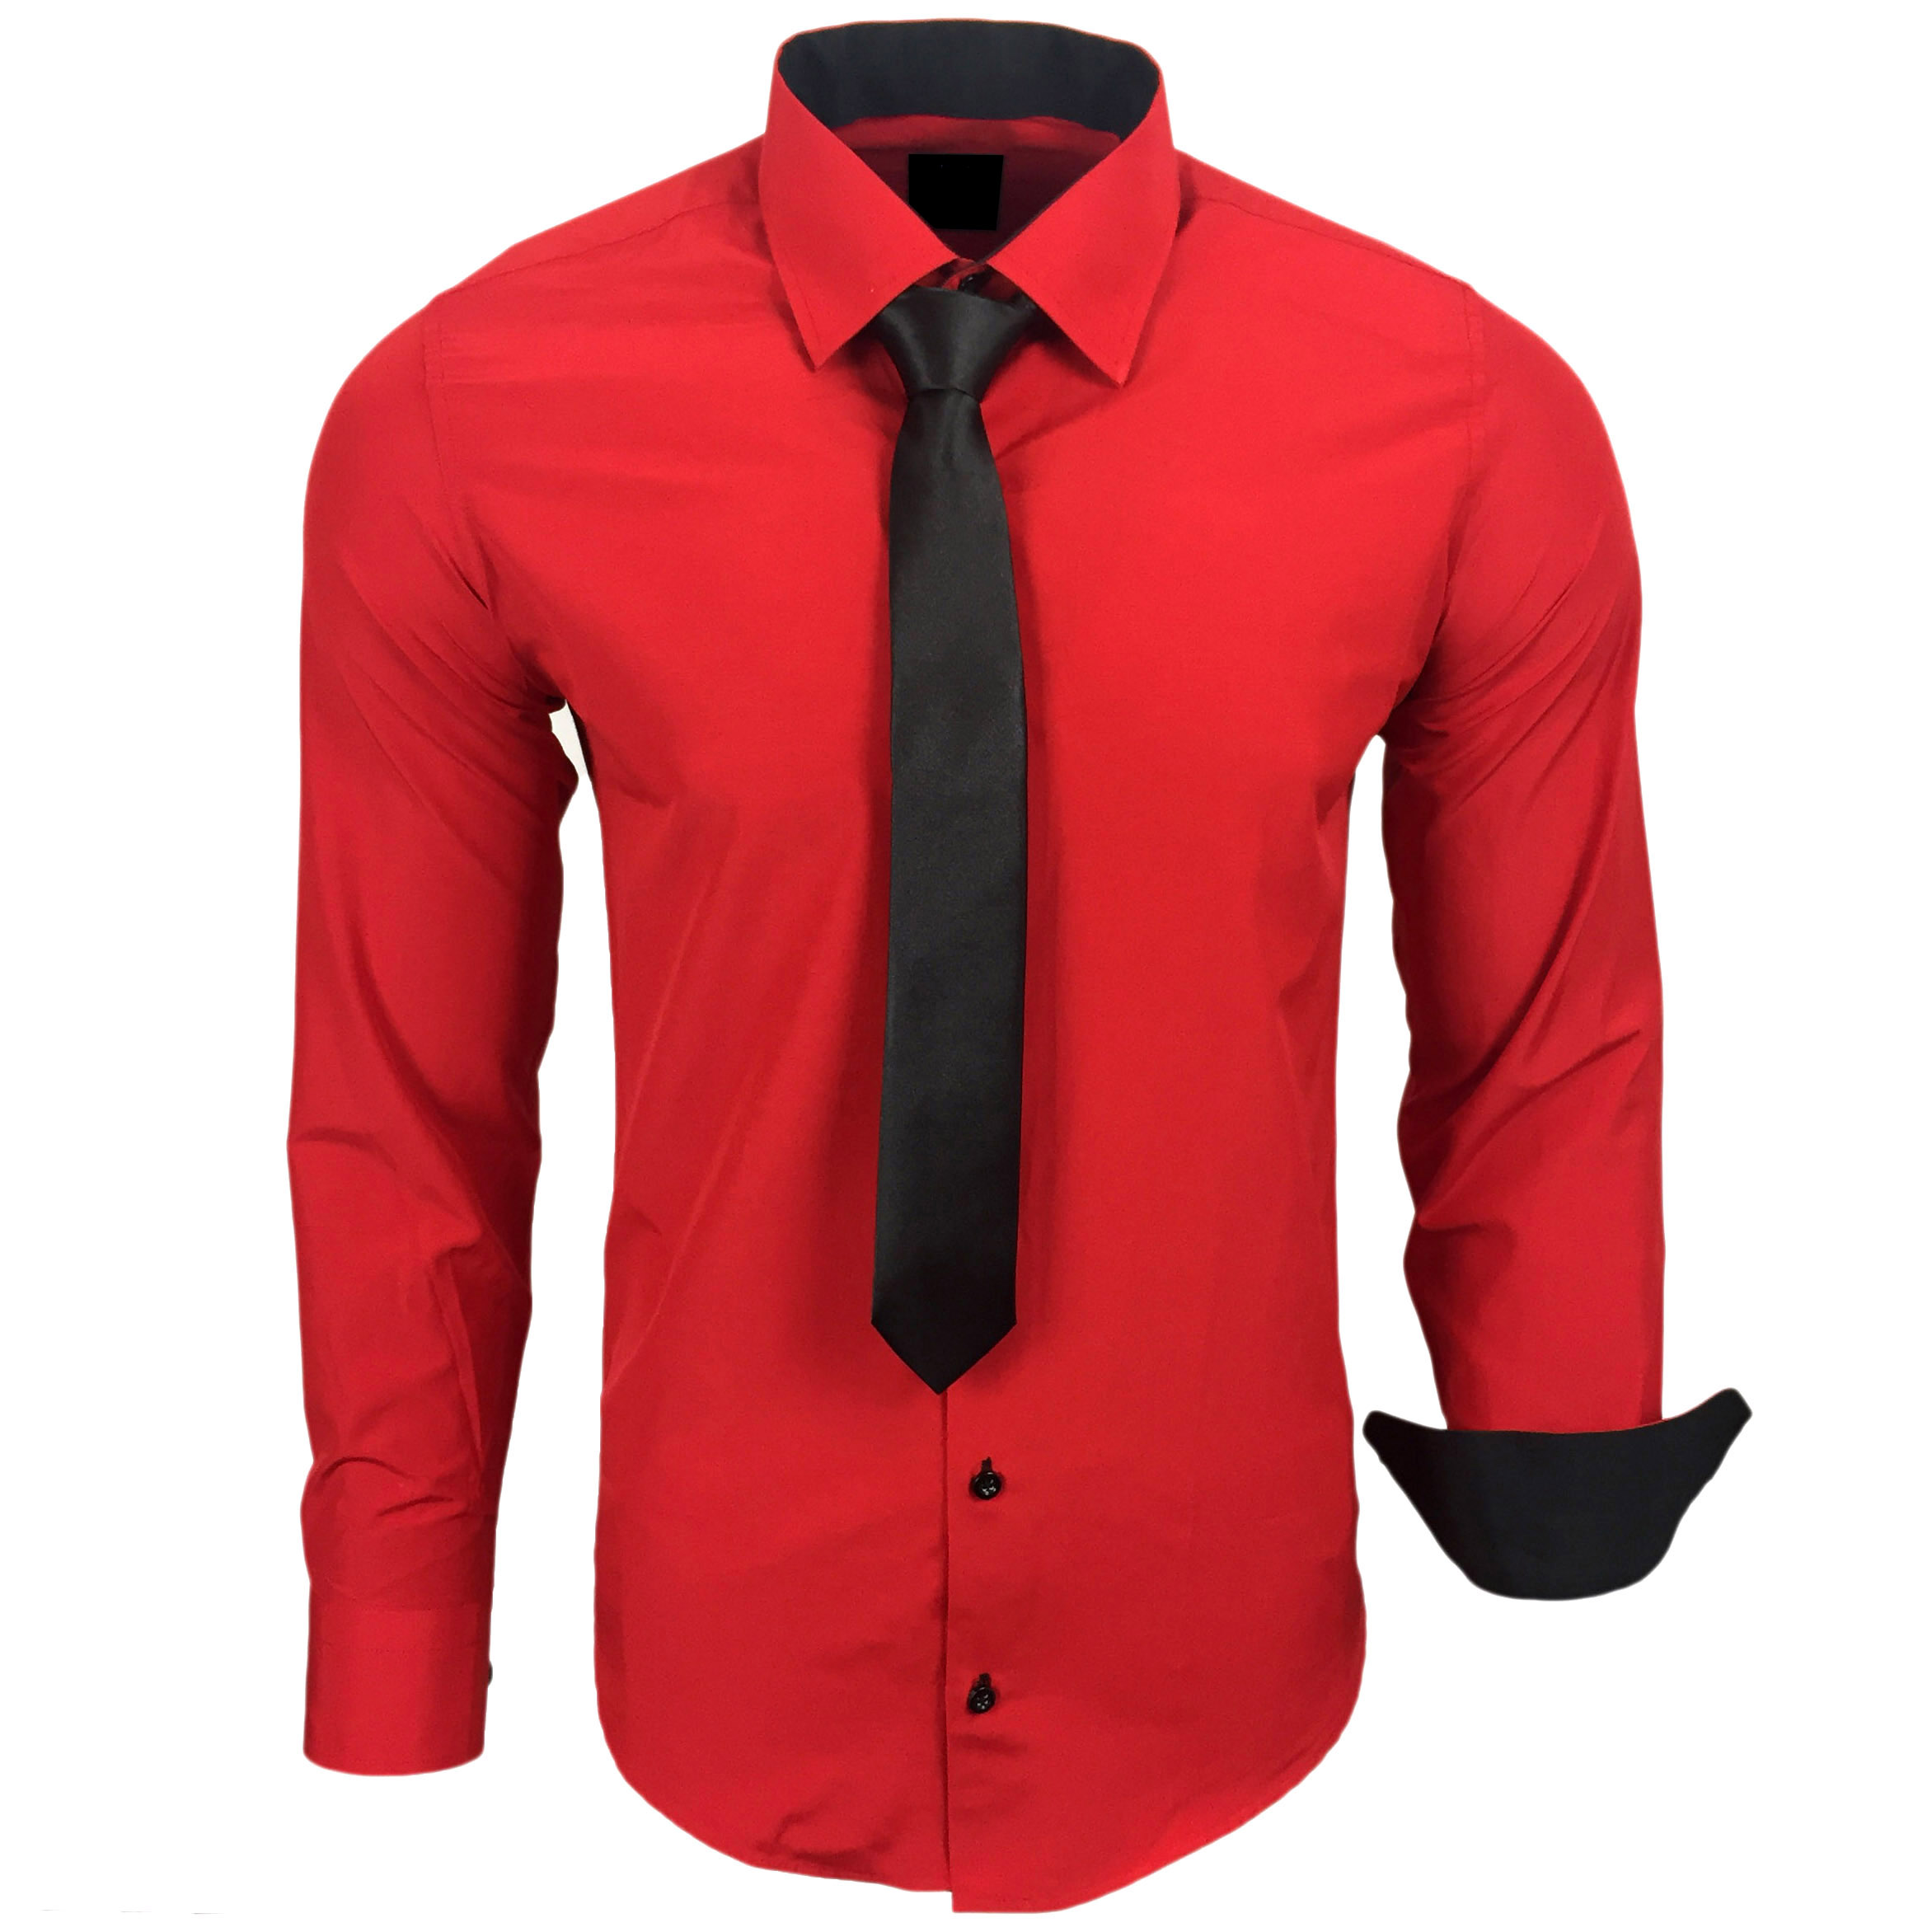 Basic Kontrast Hemd Herren Kontrast Hemd Business Hemden hochwertige Qualit...